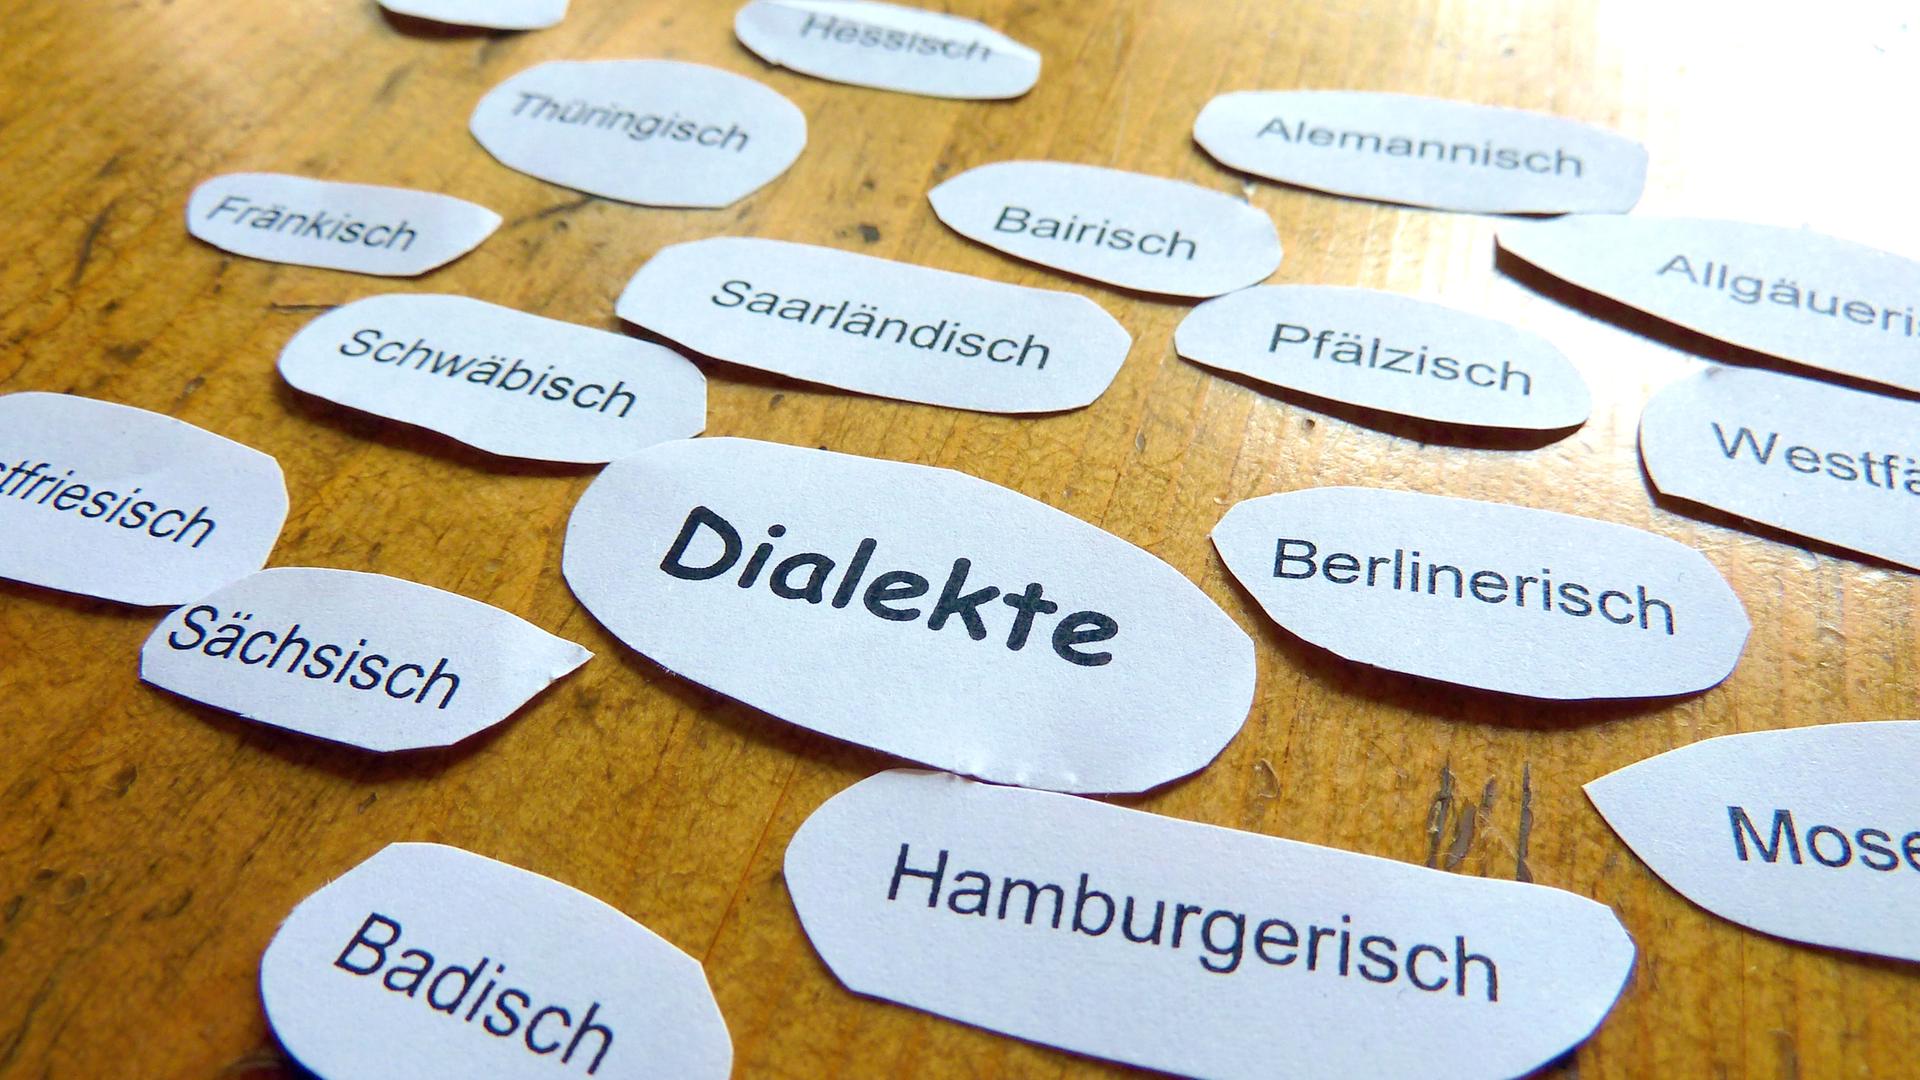 Papierausschnitte mit den Namen mehrerer deutscher Dialekte liegen auf einem Holztisch.